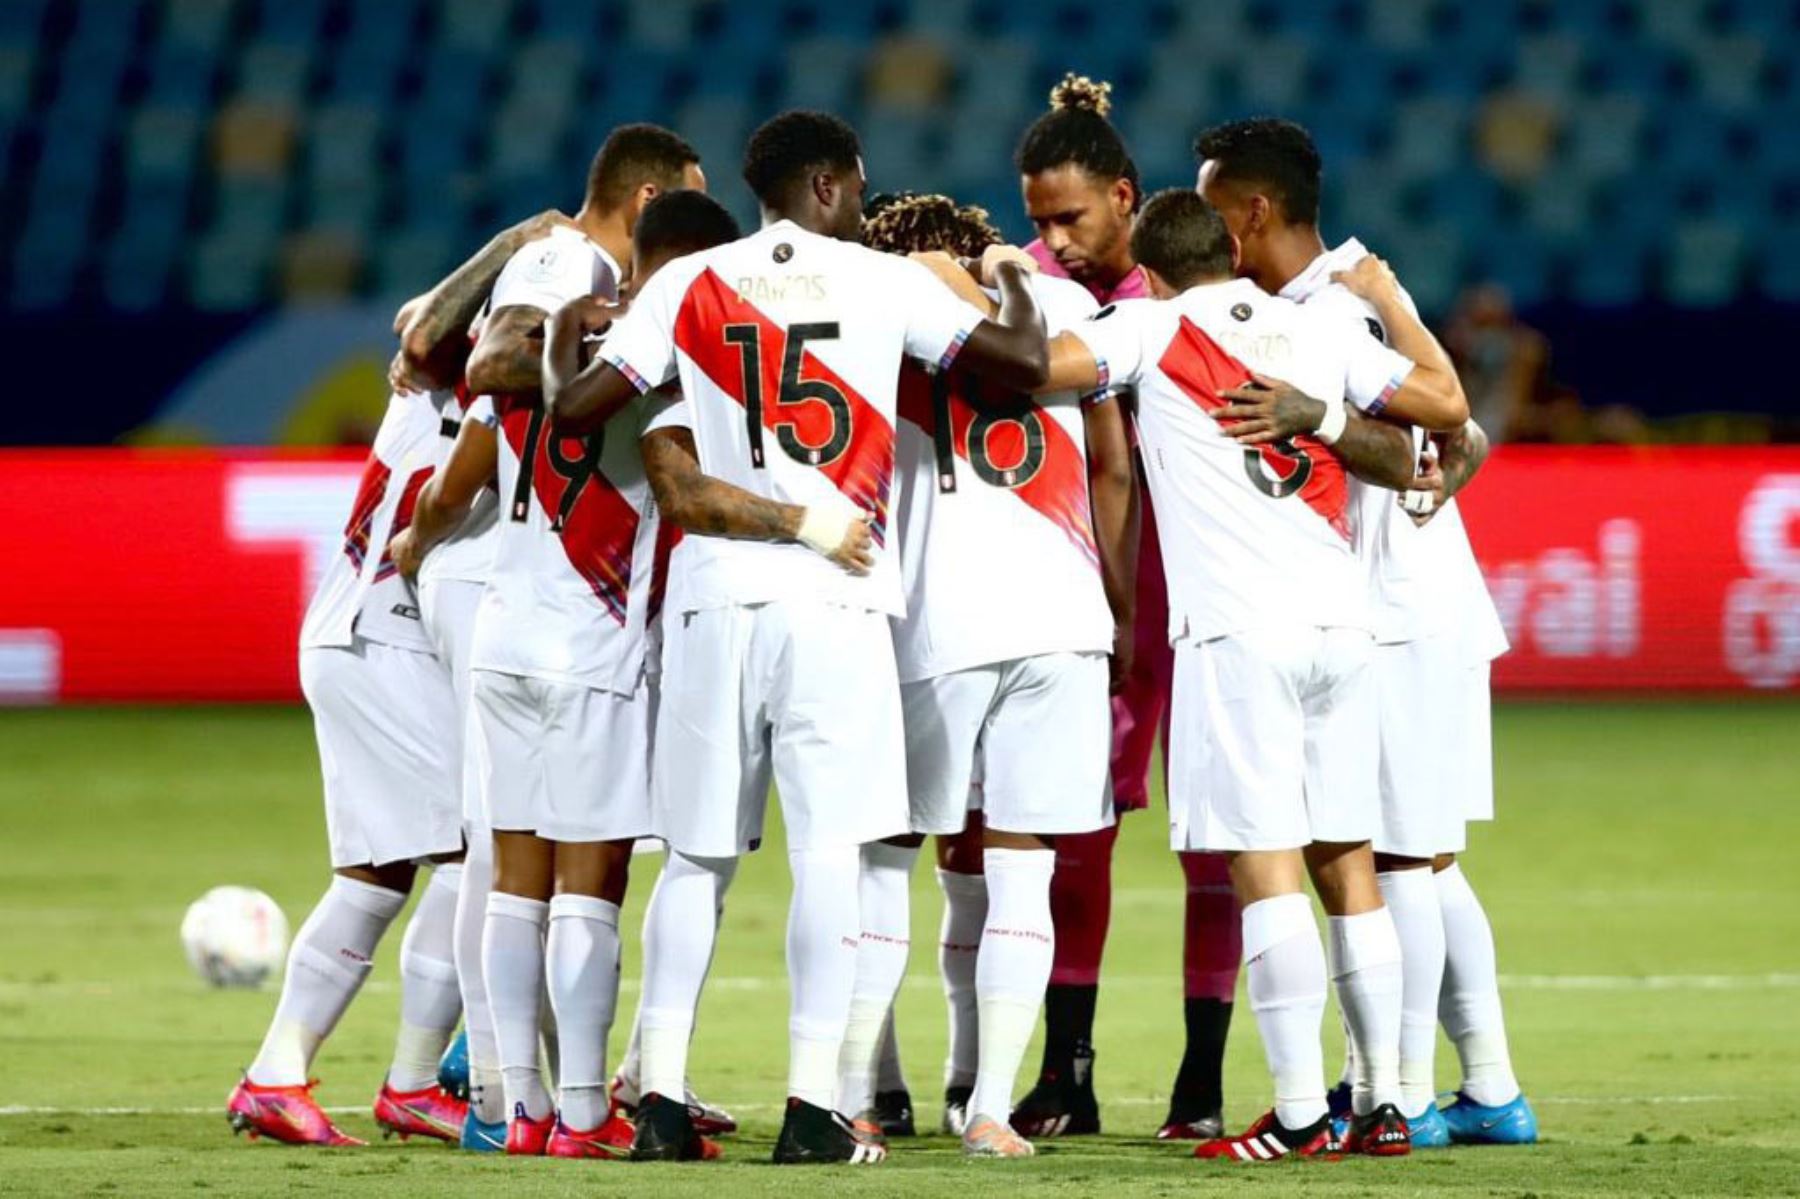 La selección peruana de fútbol volverá a jugar con público en las tribunas. ANDINA/Difusión